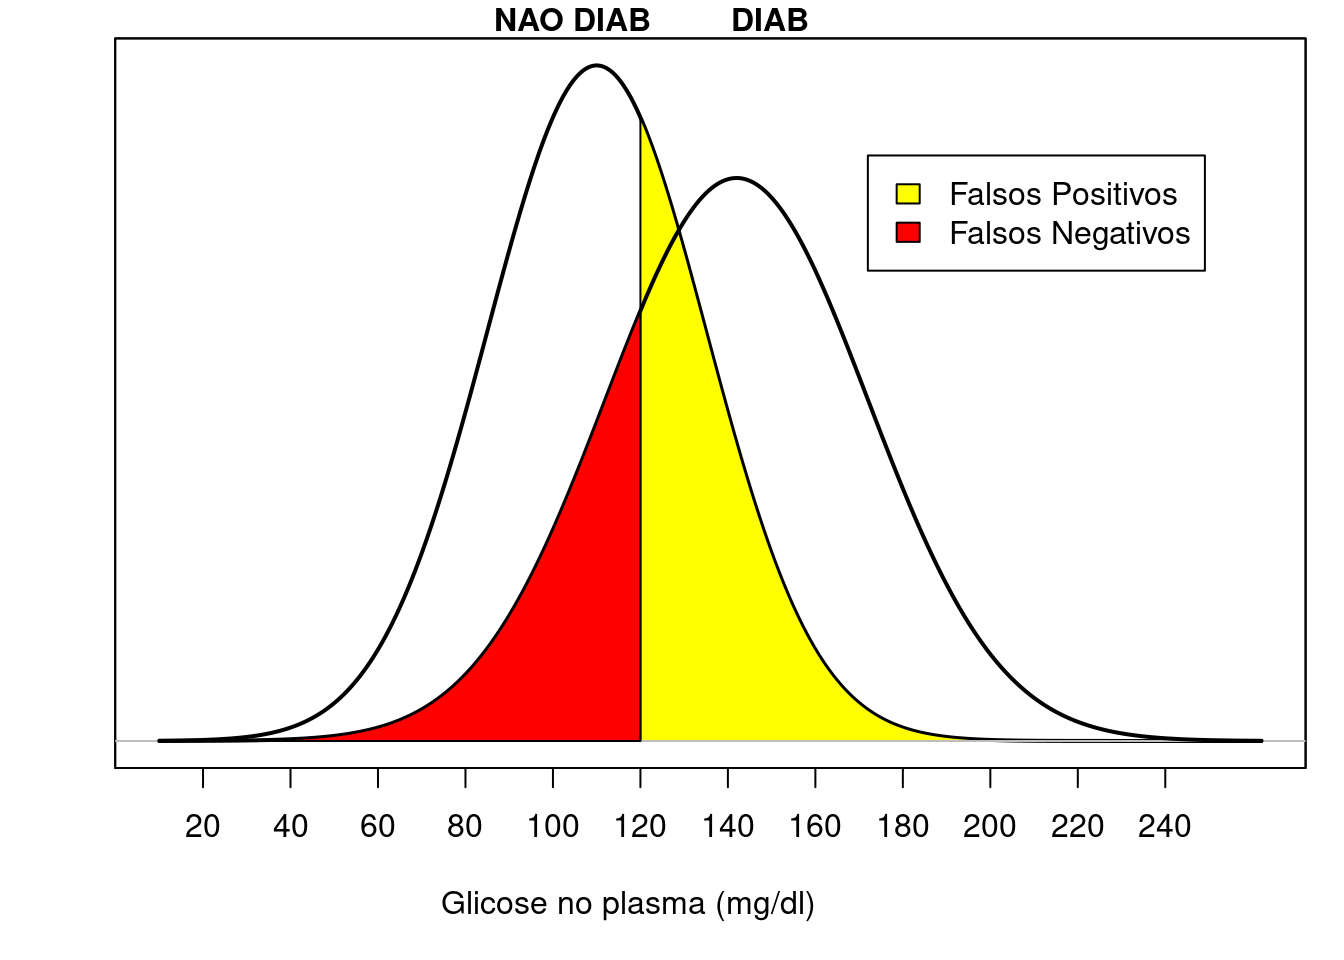 Funções densidade de probabilidade da variável glicose em 2 horas em um teste de tolerância à glicose em duas populações: diabéticos (DIAB) e não diabéticos (NAO DIAB). A área em amarelo indica a proporção de falsos positivos e a área em vermelho indica a proporção de falsos negativos, quando o valor 120 mg/dl é escolhido como ponto de corte.